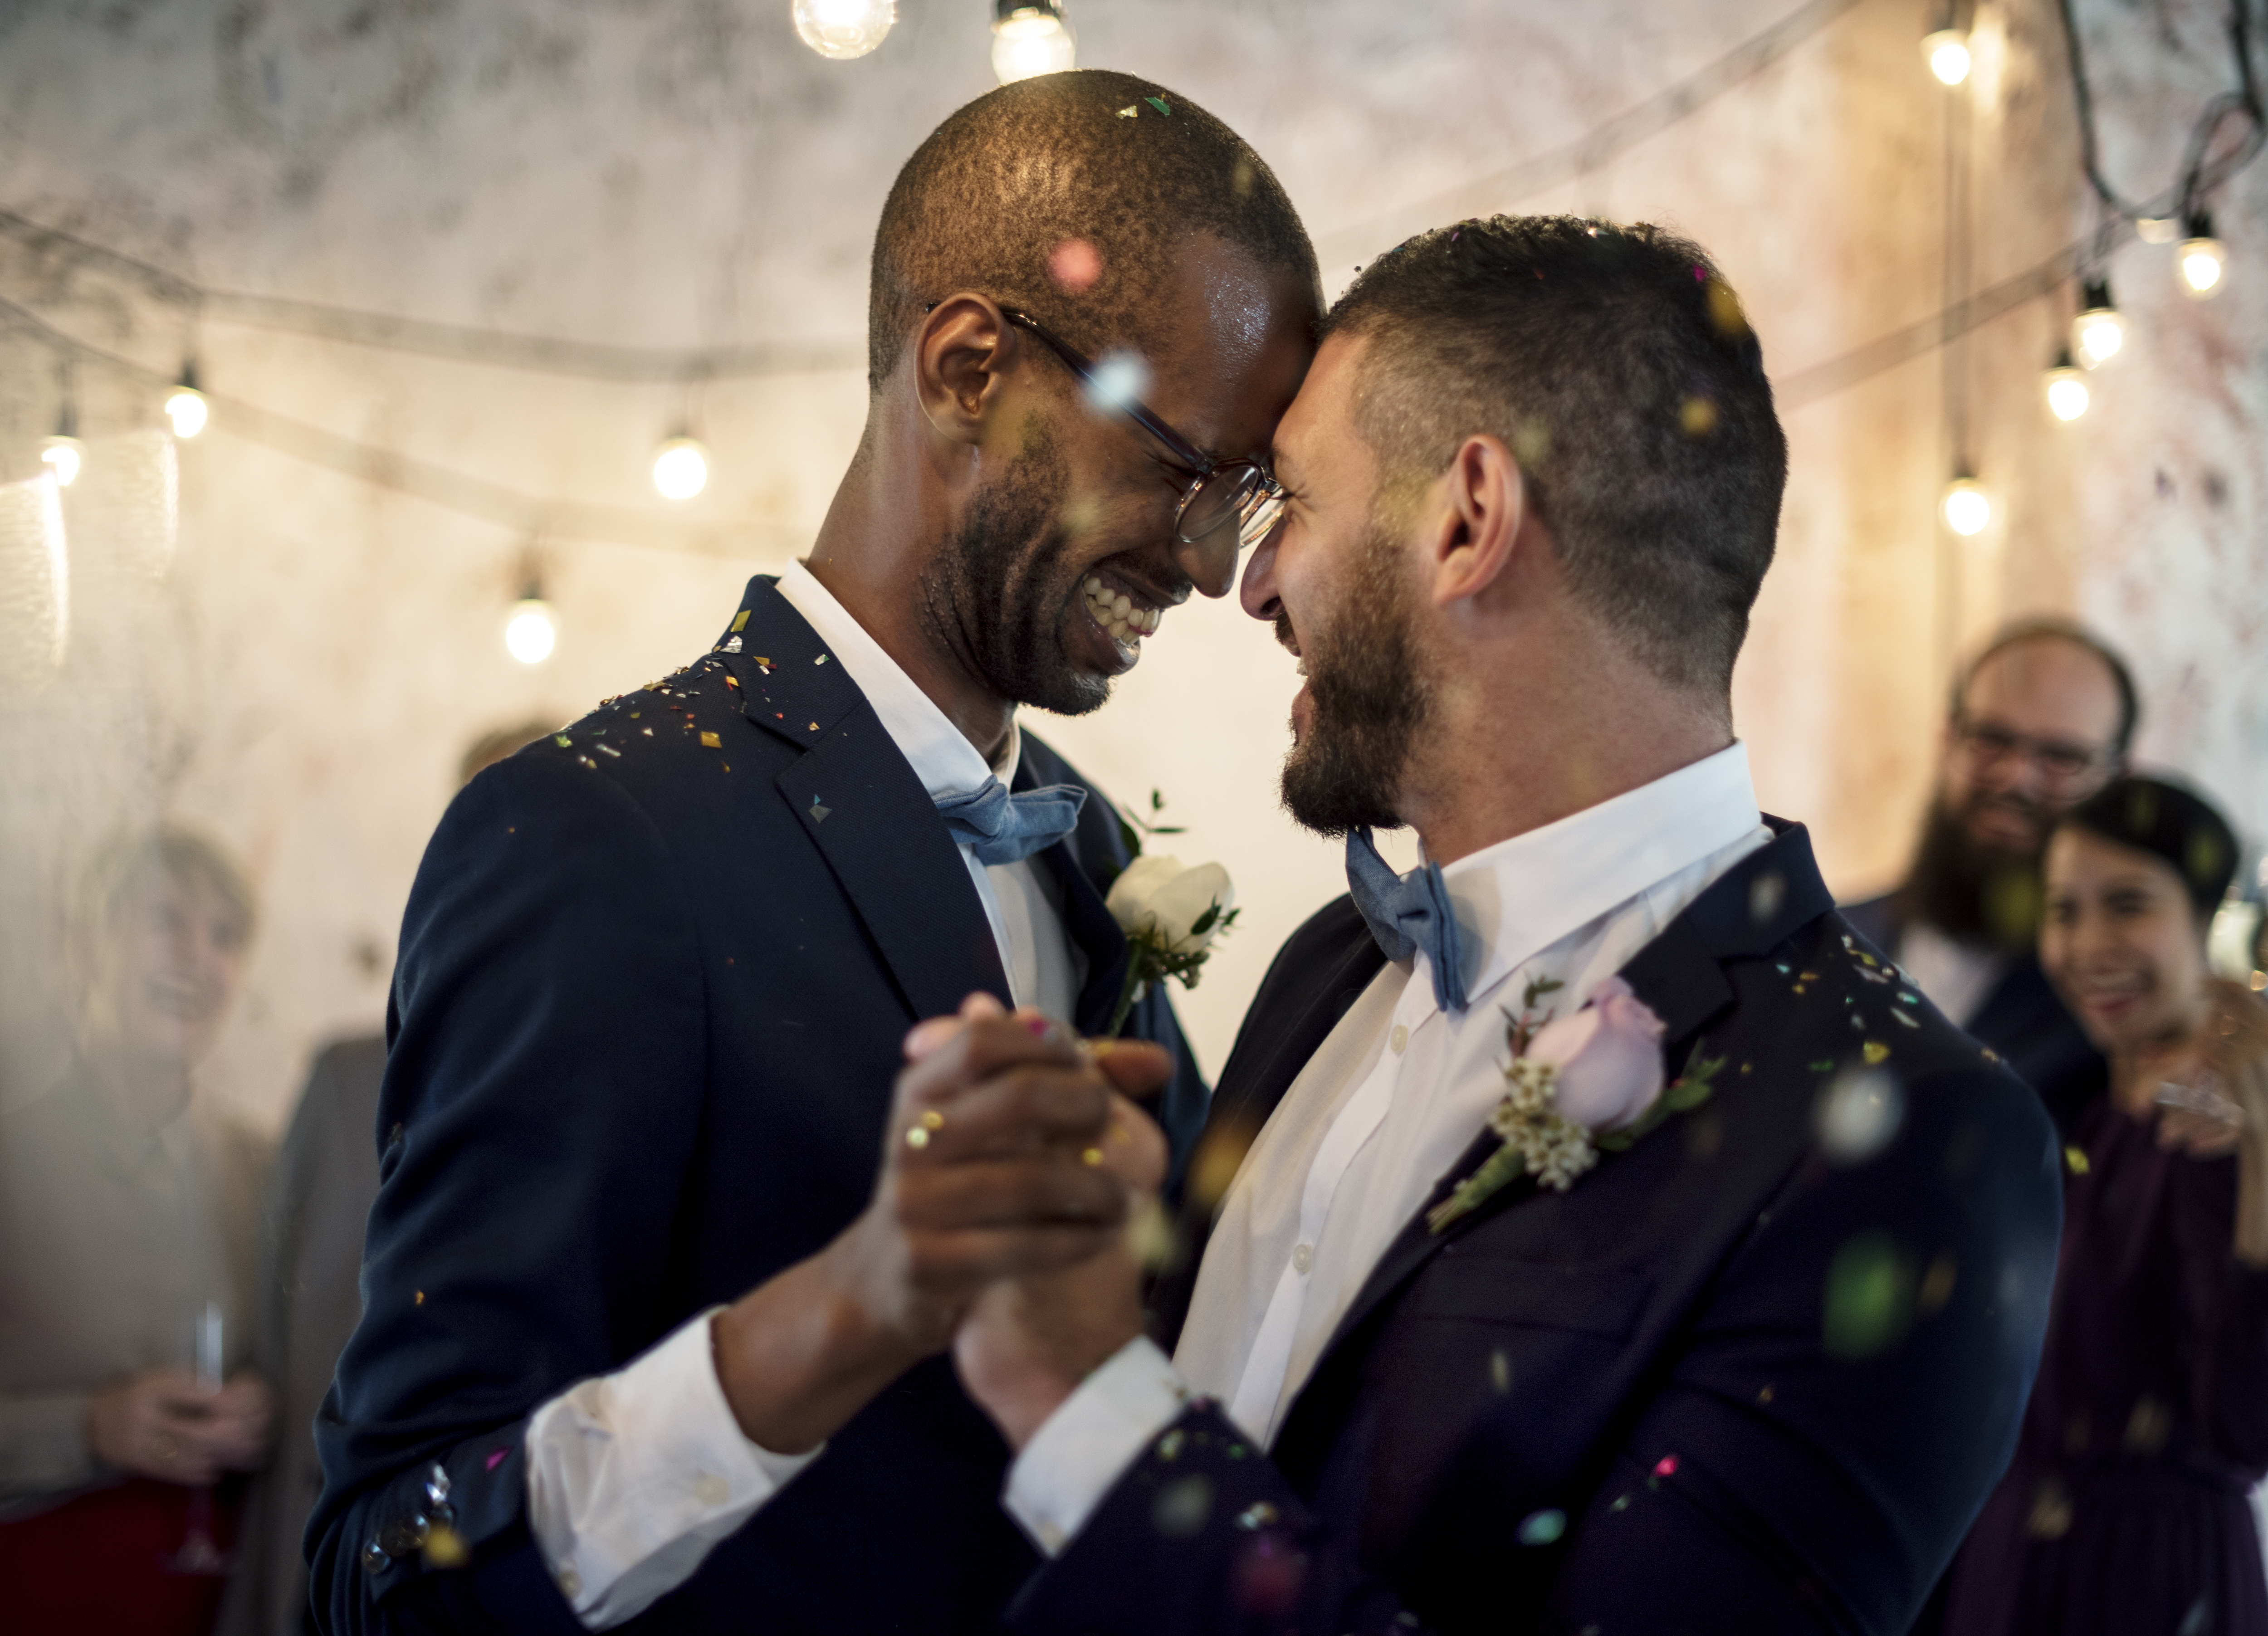 Eine Nahaufnahme eines frisch verheirateten schwulen Paares | Quelle: Shutterstock